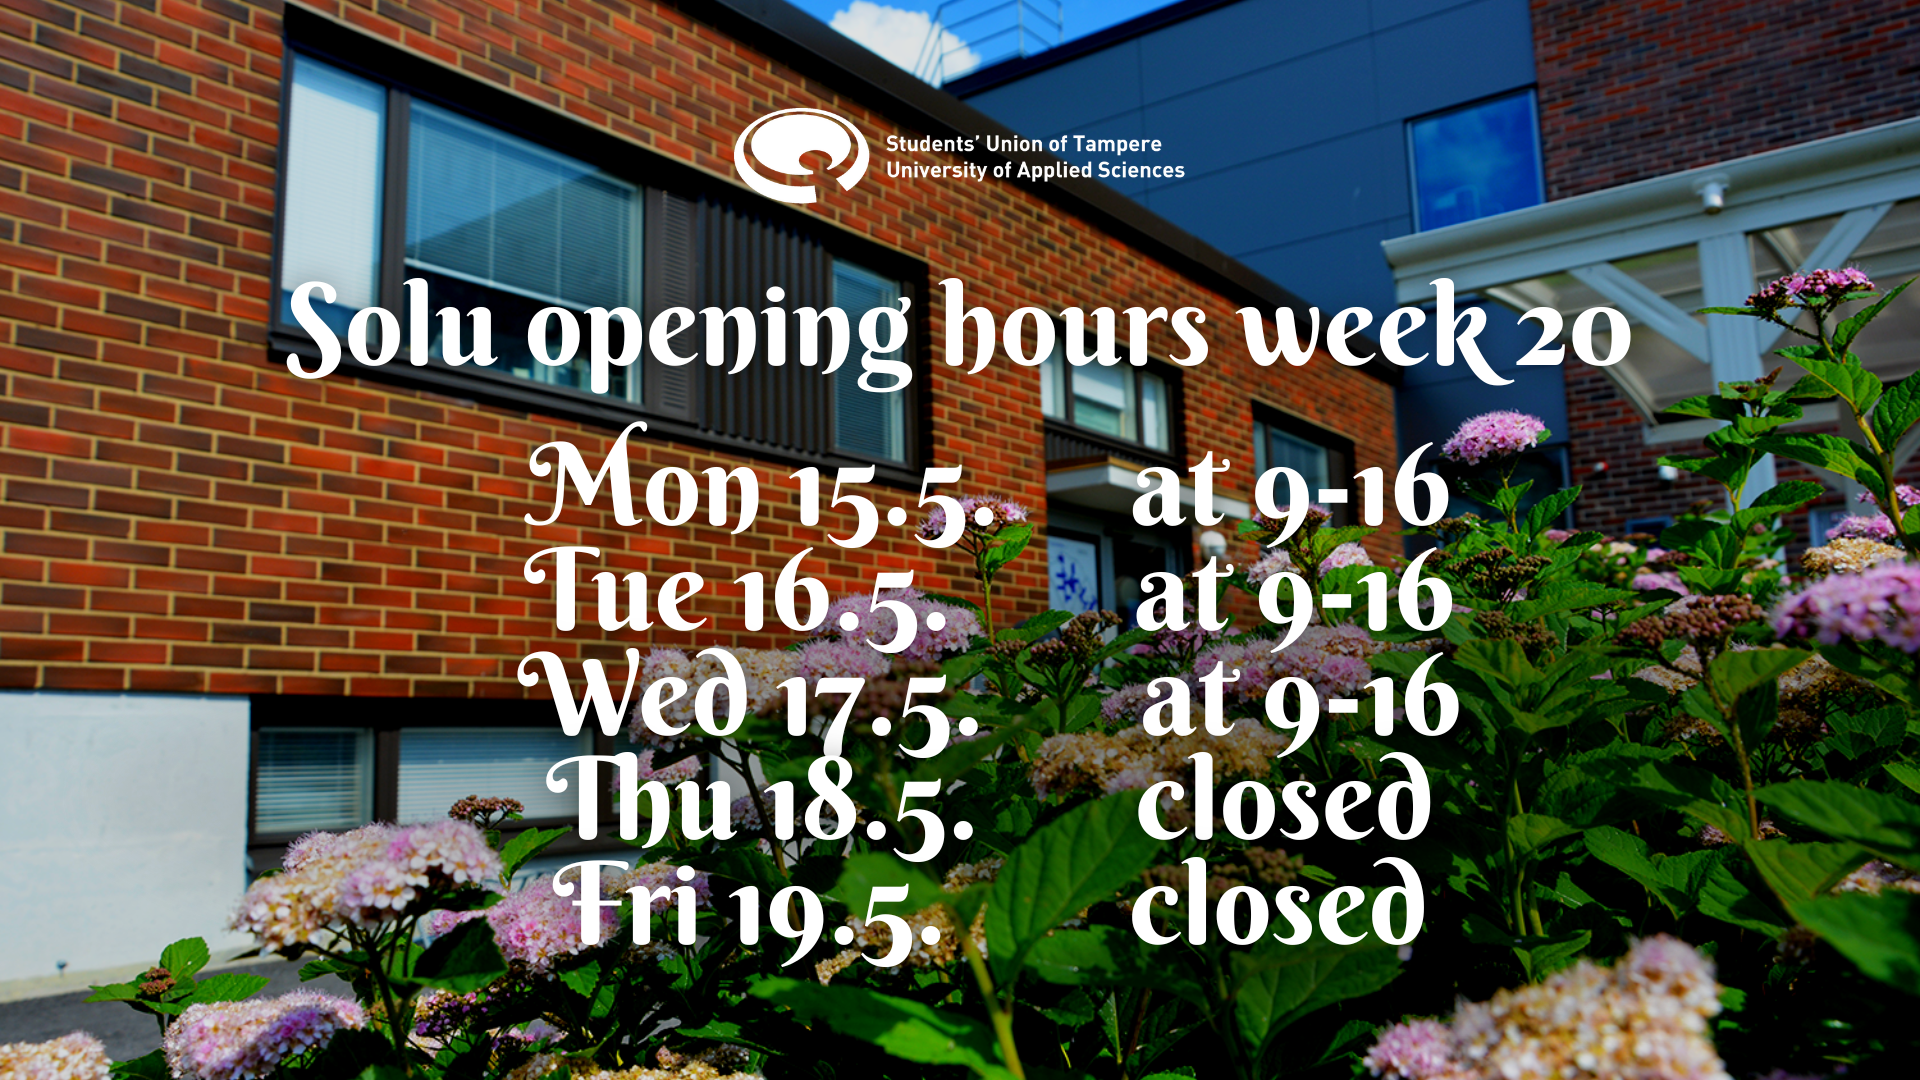 Solu opening hours this week (week 20)